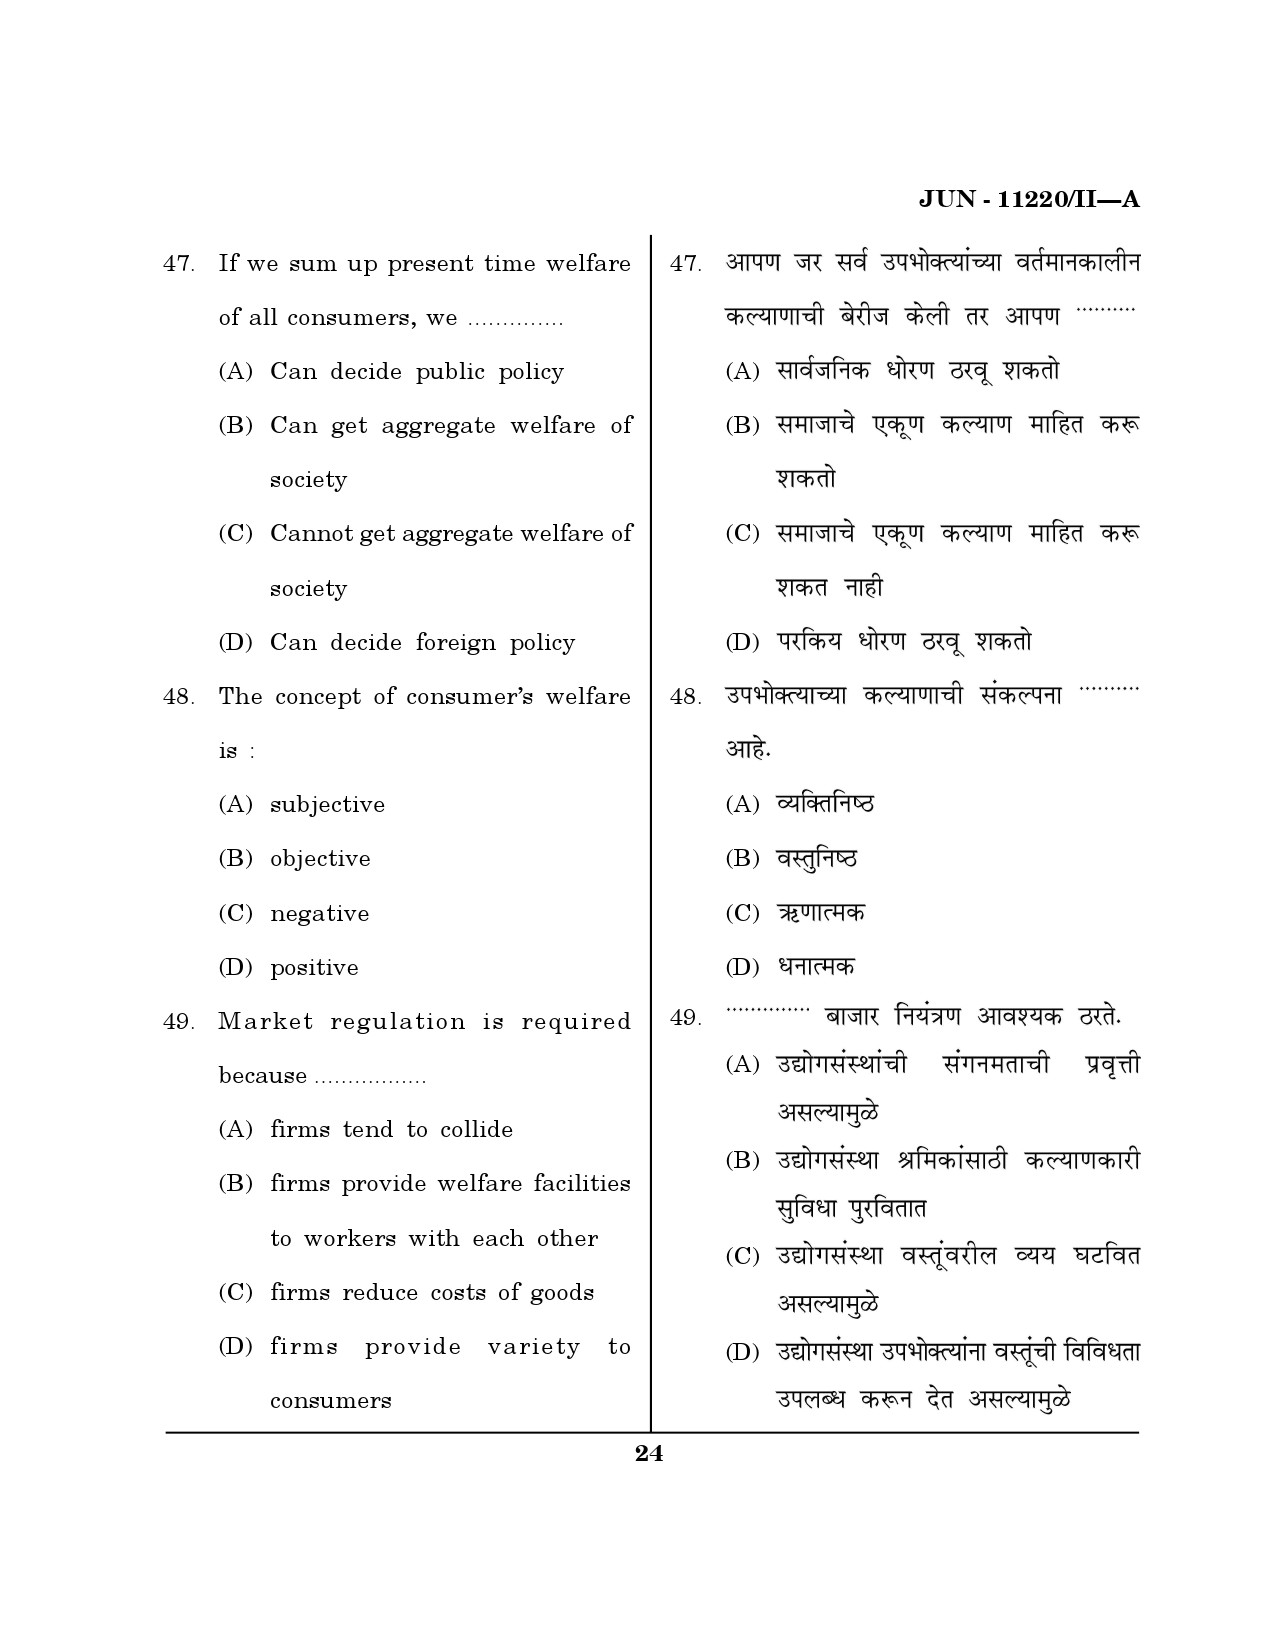 Maharashtra SET Economics Question Paper II June 2020 23